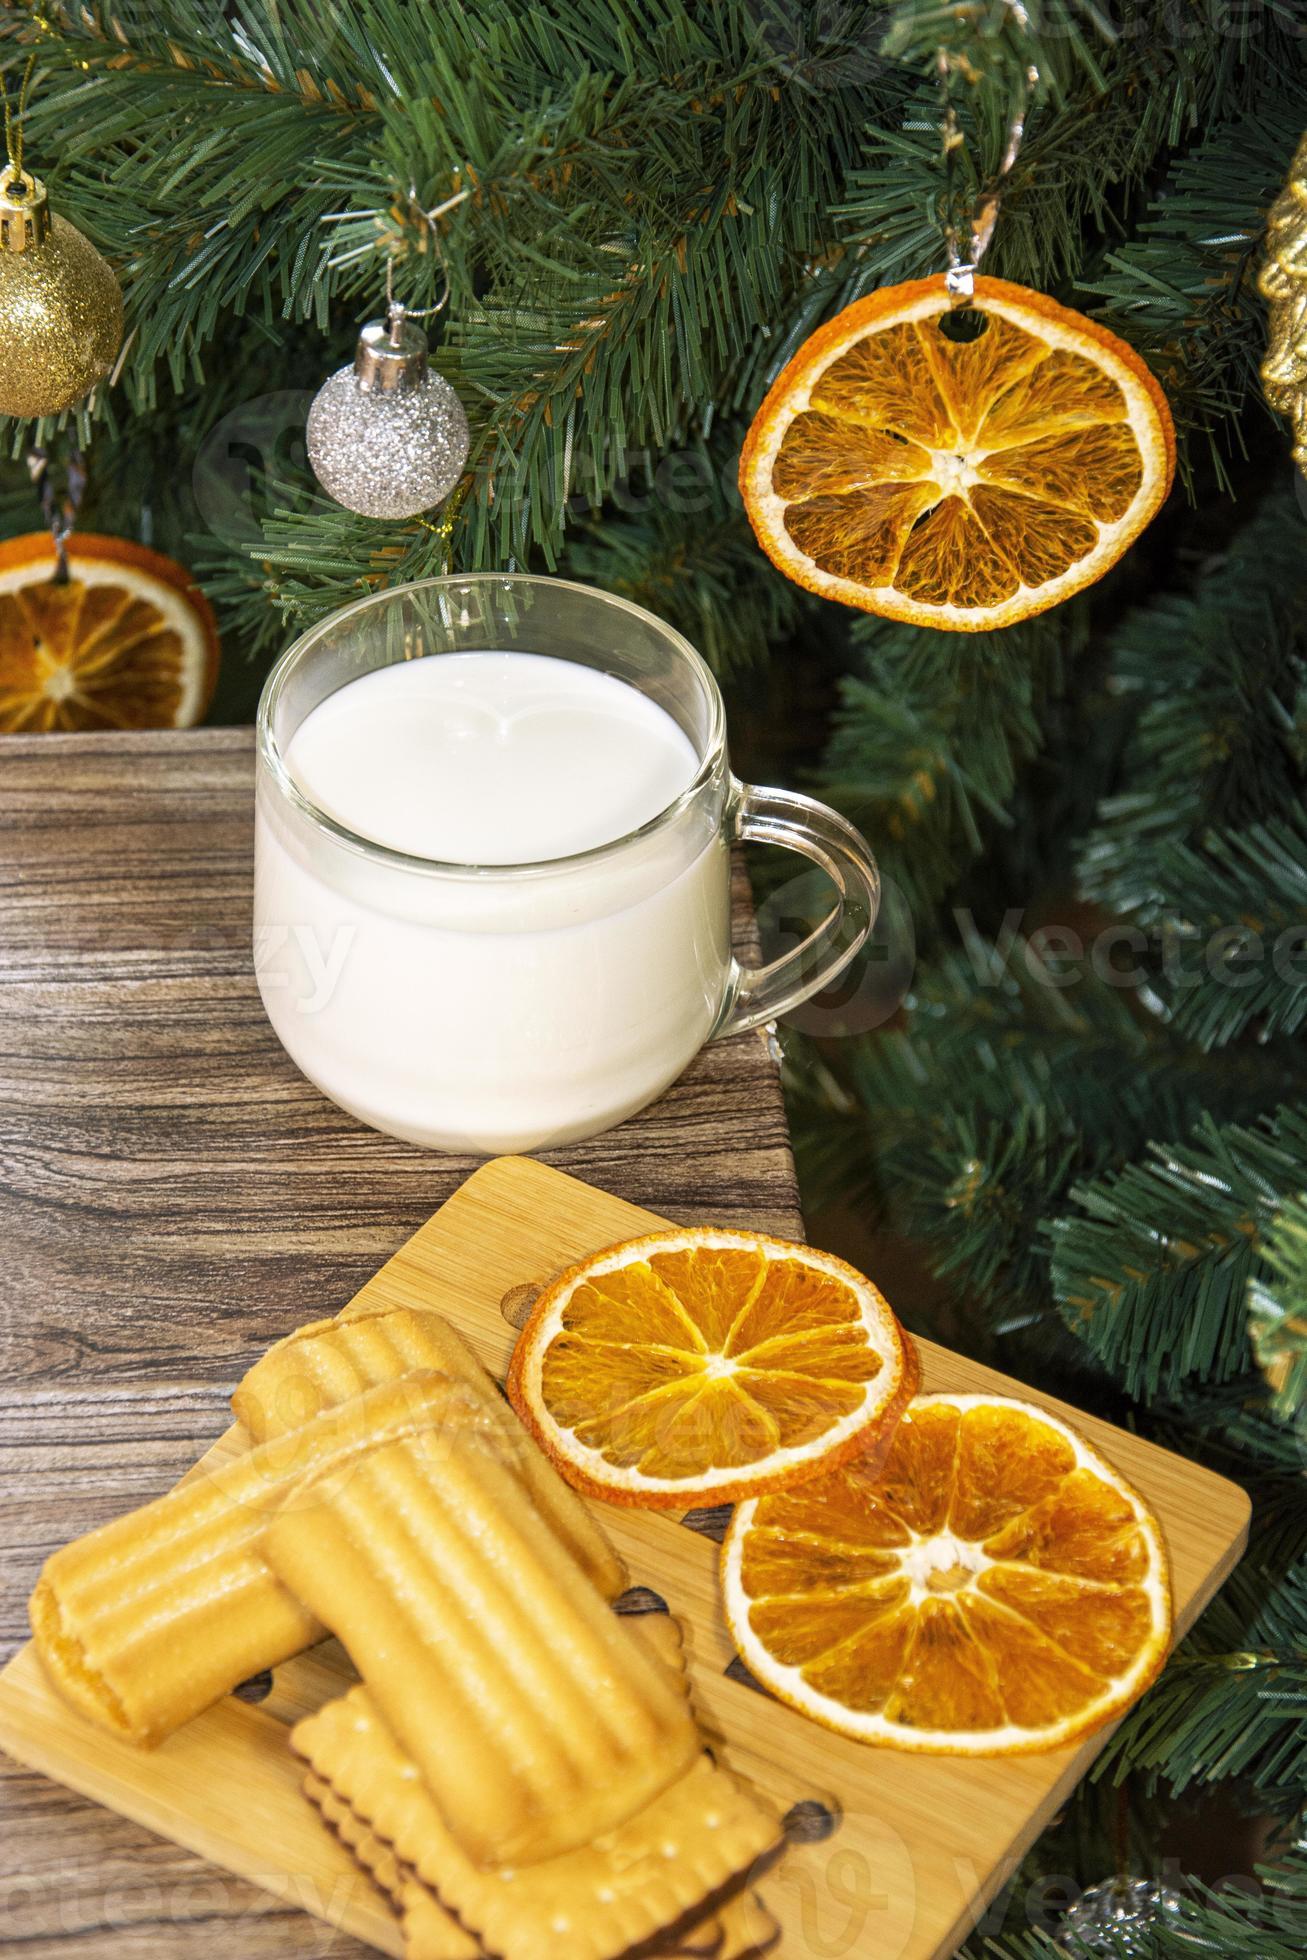 kerstboom met droge stukjes sinaasappel. koekjes met melk voor de kerstman. foto